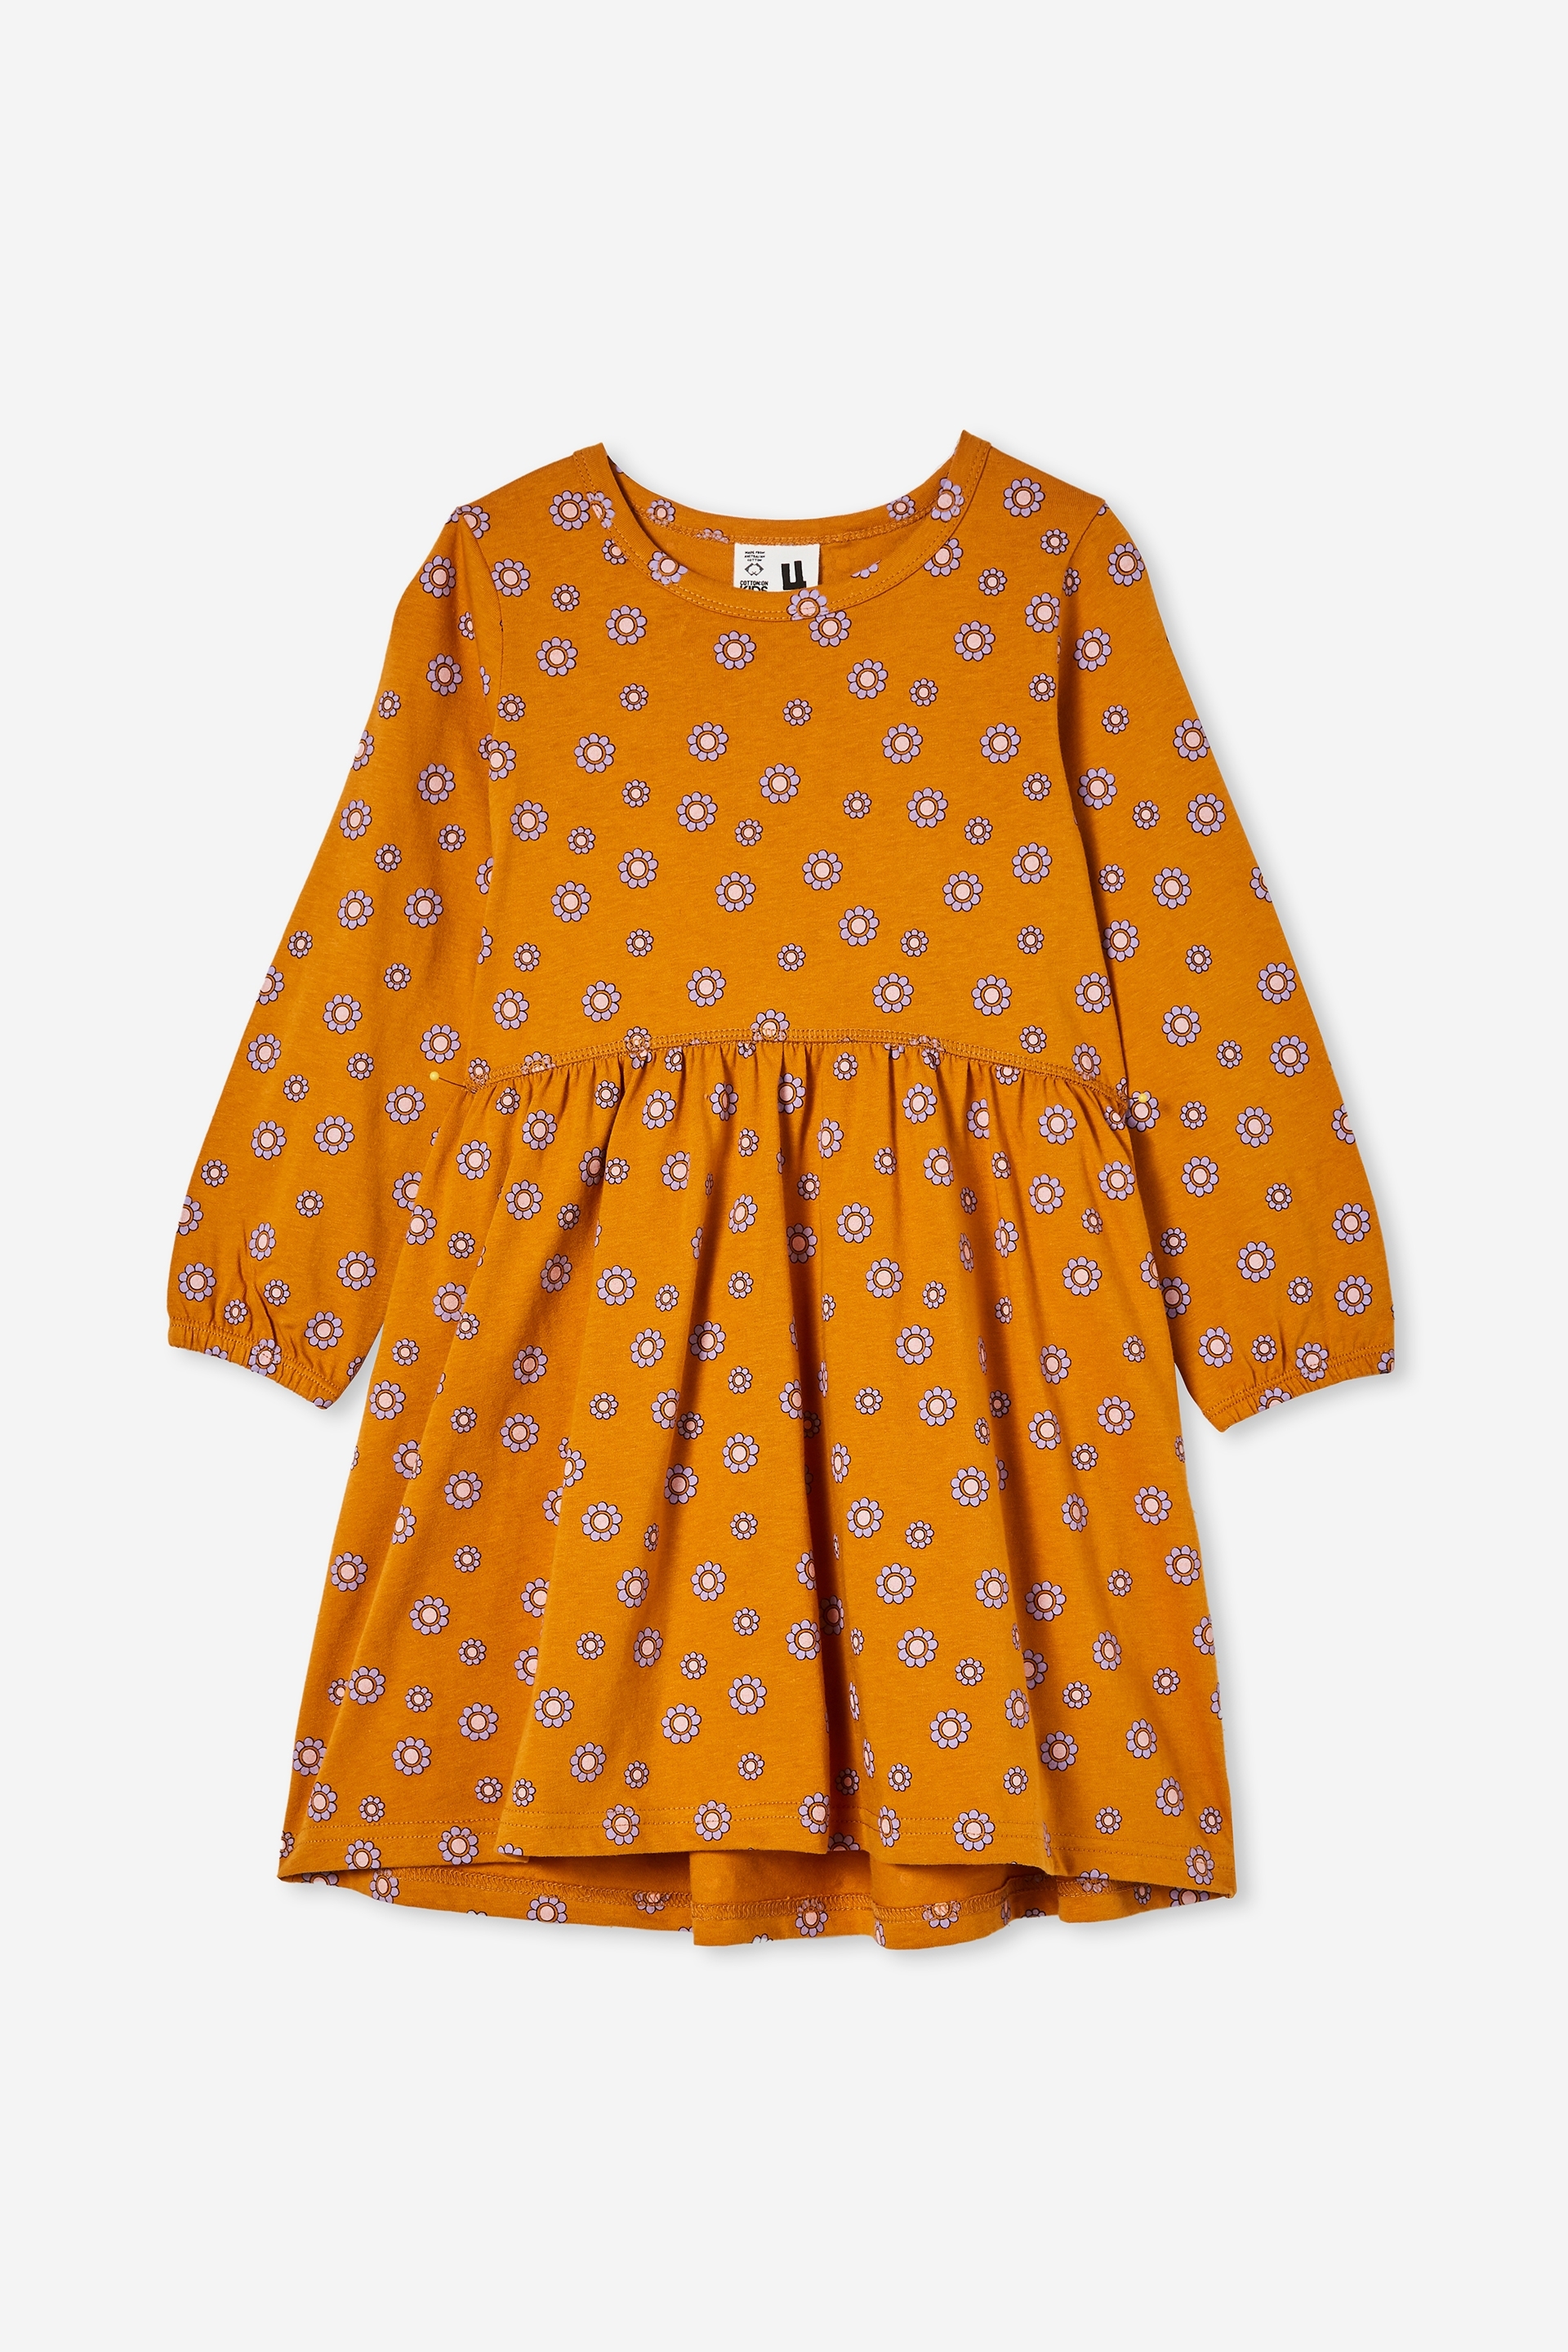 Cotton On Kids - Savannah Long Sleeve Dress - Tumeric latte/garden daisy